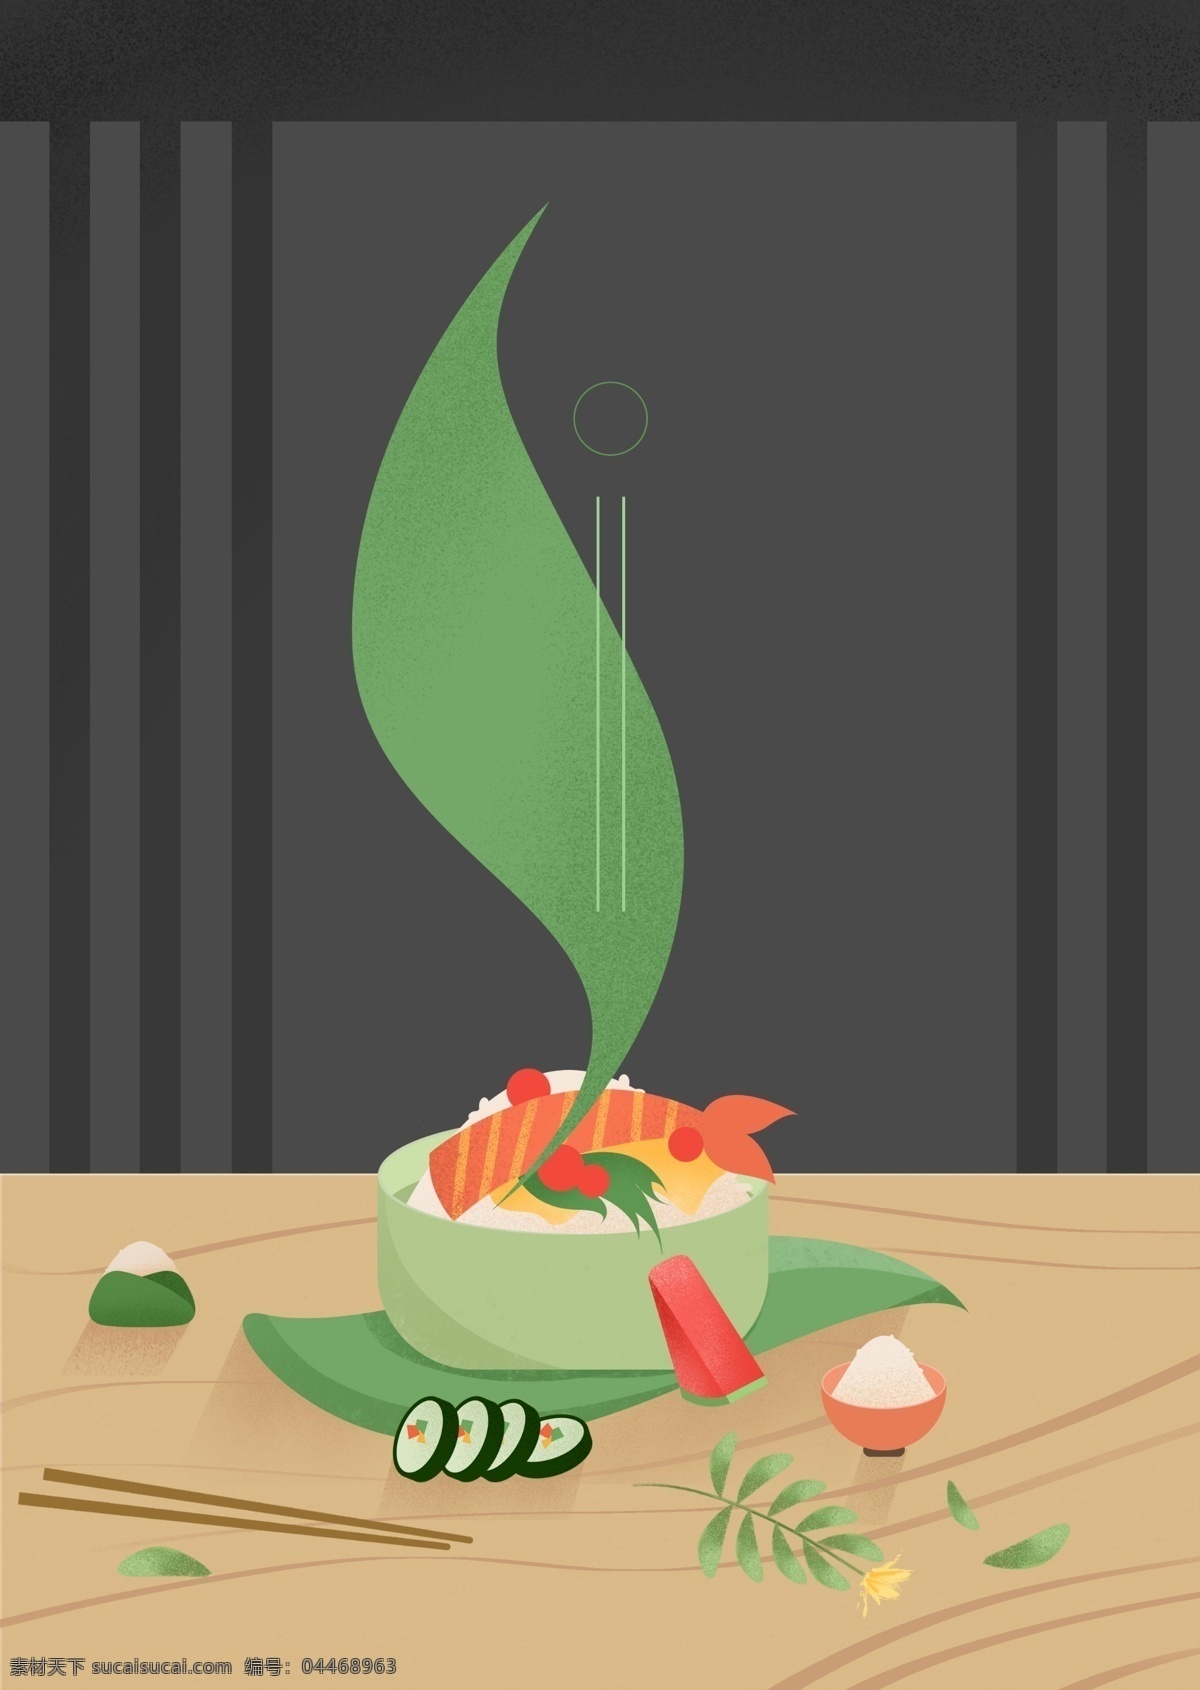 手绘 日式 食物 广告 背景 清新 植物 树叶 寿司 简约 广告背景 日料 筷子